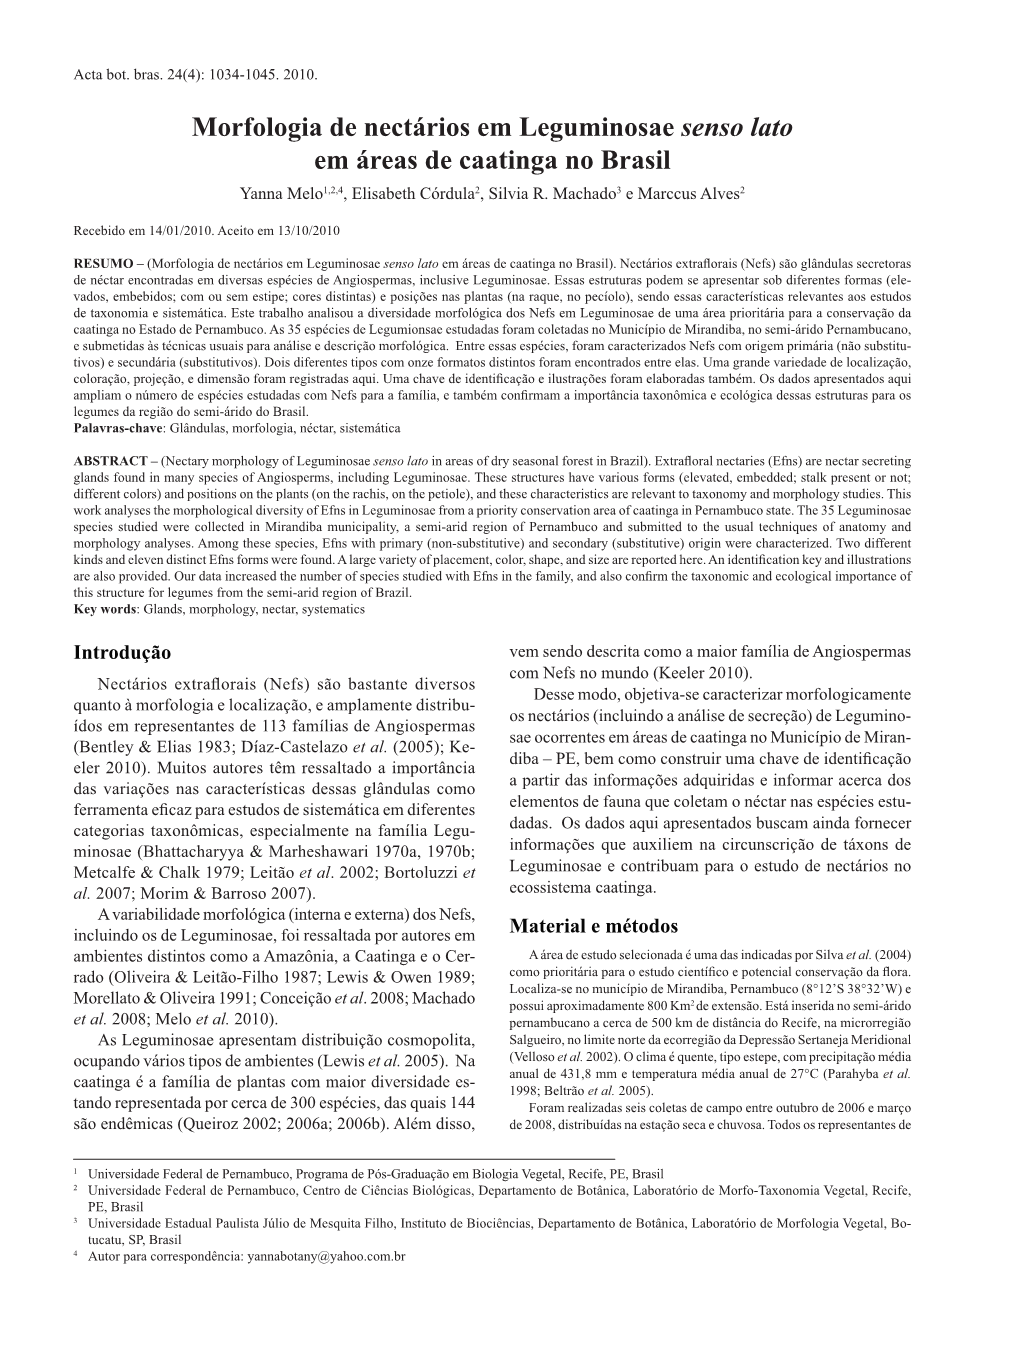 Morfologia De Nectários Em Leguminosae Senso Lato Em Áreas De Caatinga No Brasil Yanna Melo1,2,4, Elisabeth Córdula2, Silvia R